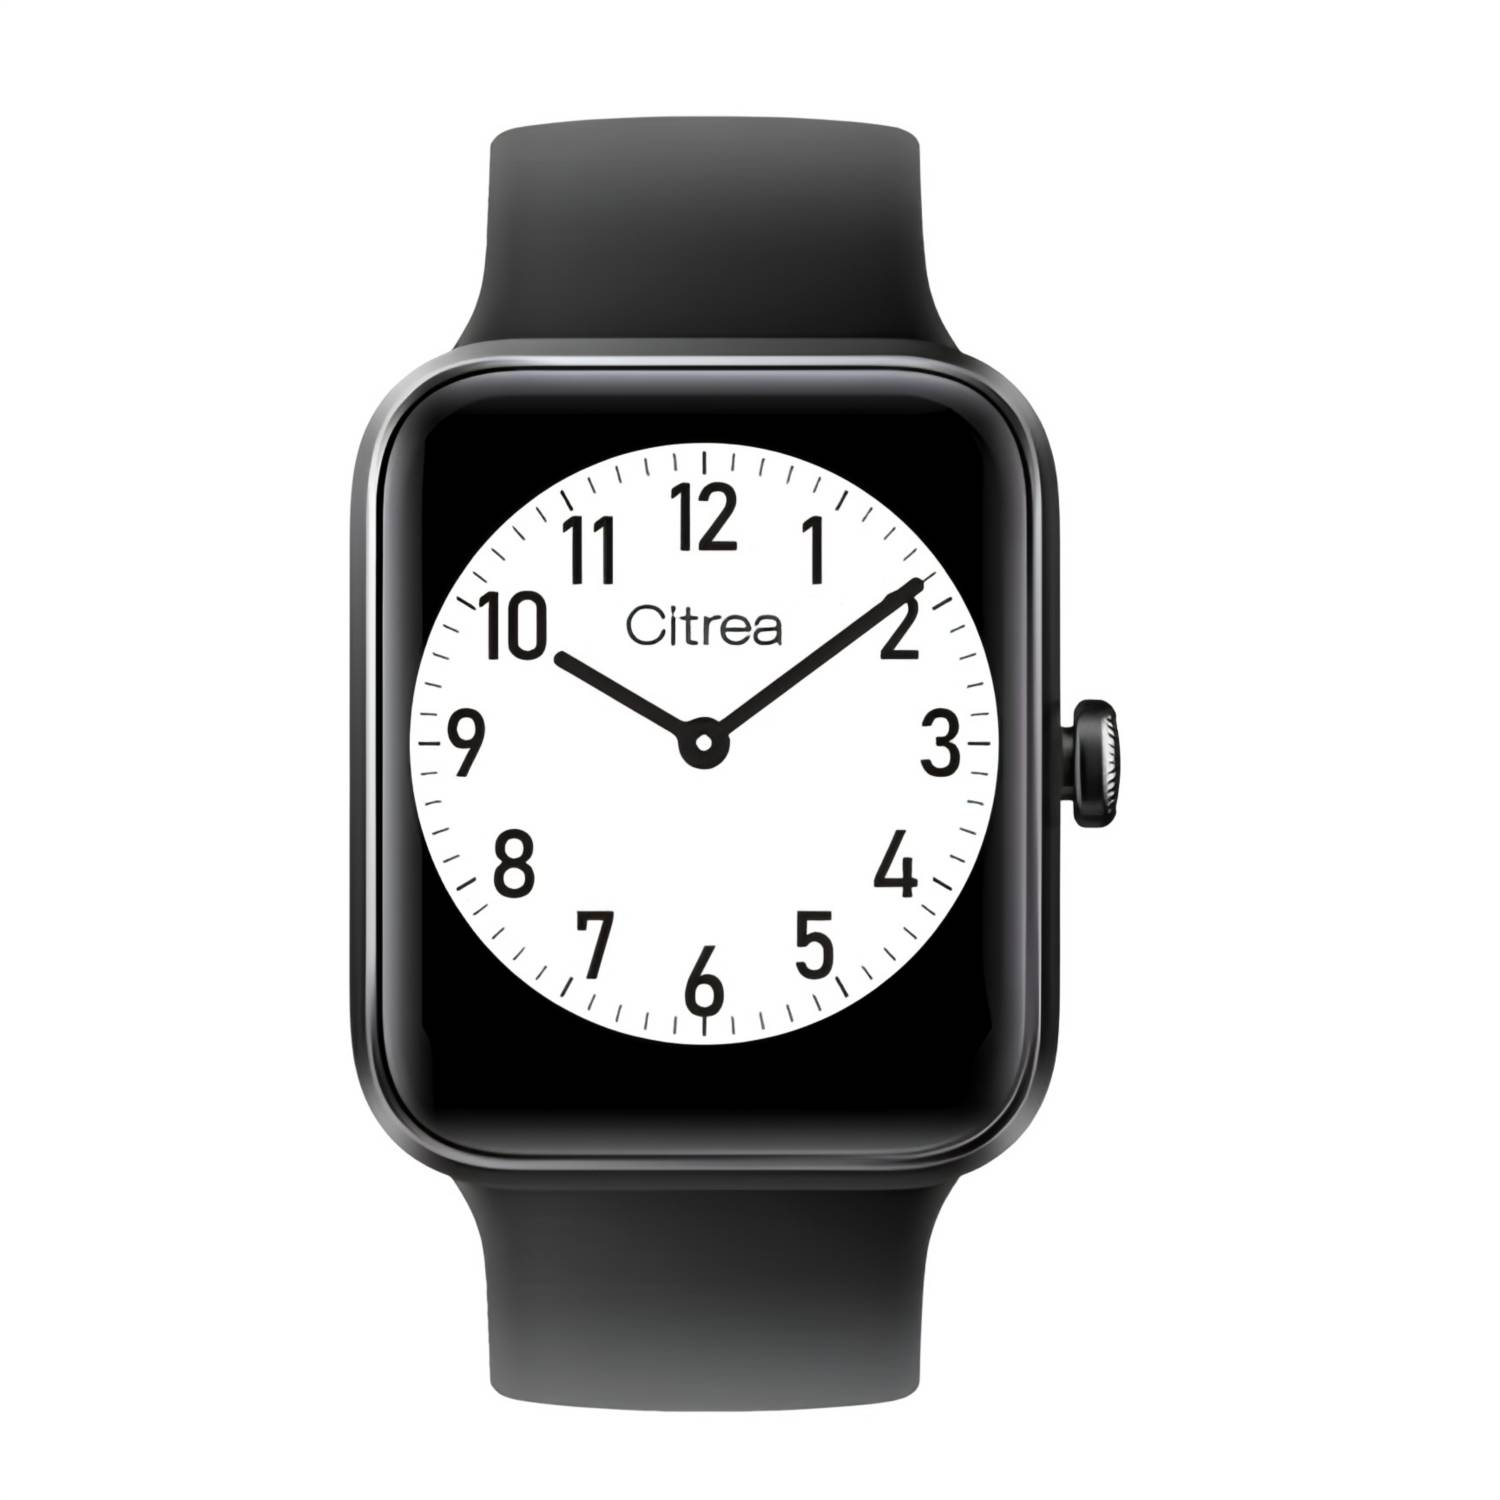 Reloj Smartwatch QyQ Citrea 2da Generación de la casa Citizen UNISEX Q&Q